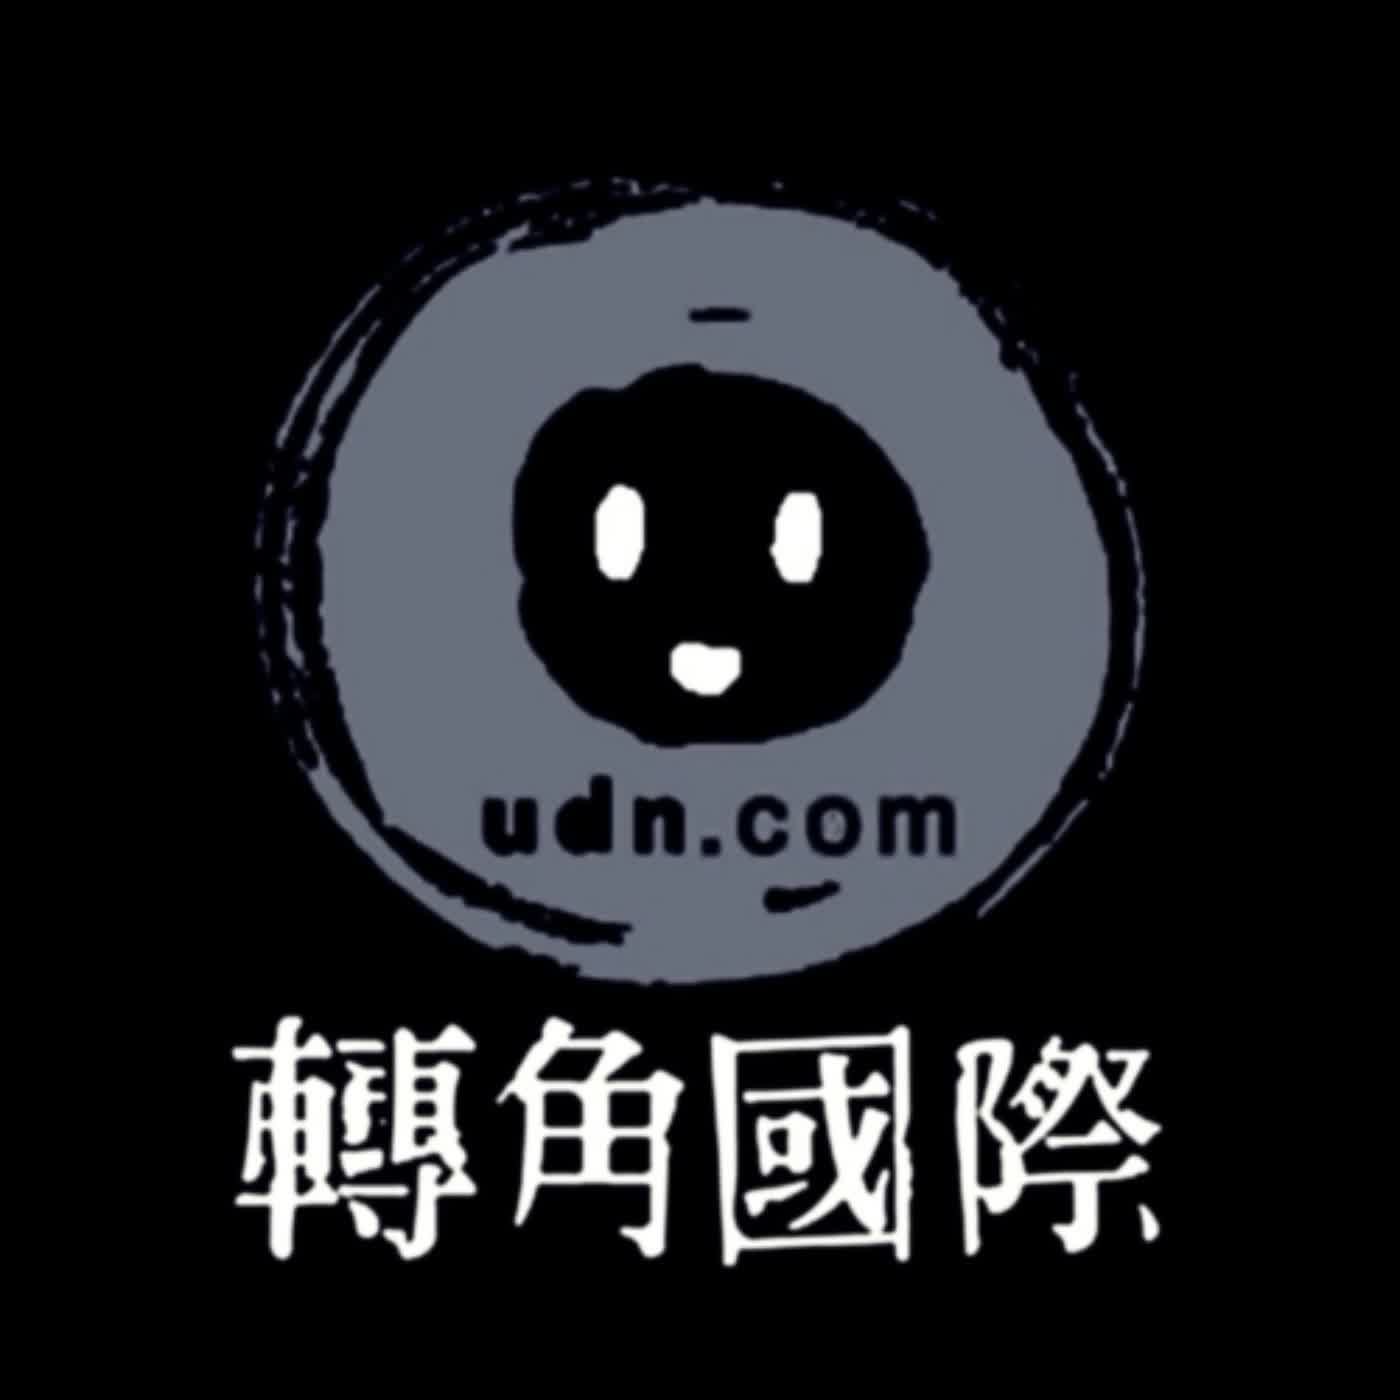 【查閱編輯紀錄】EP.01 新單元初次上線，談本週的裴洛西訪台與中國軍演